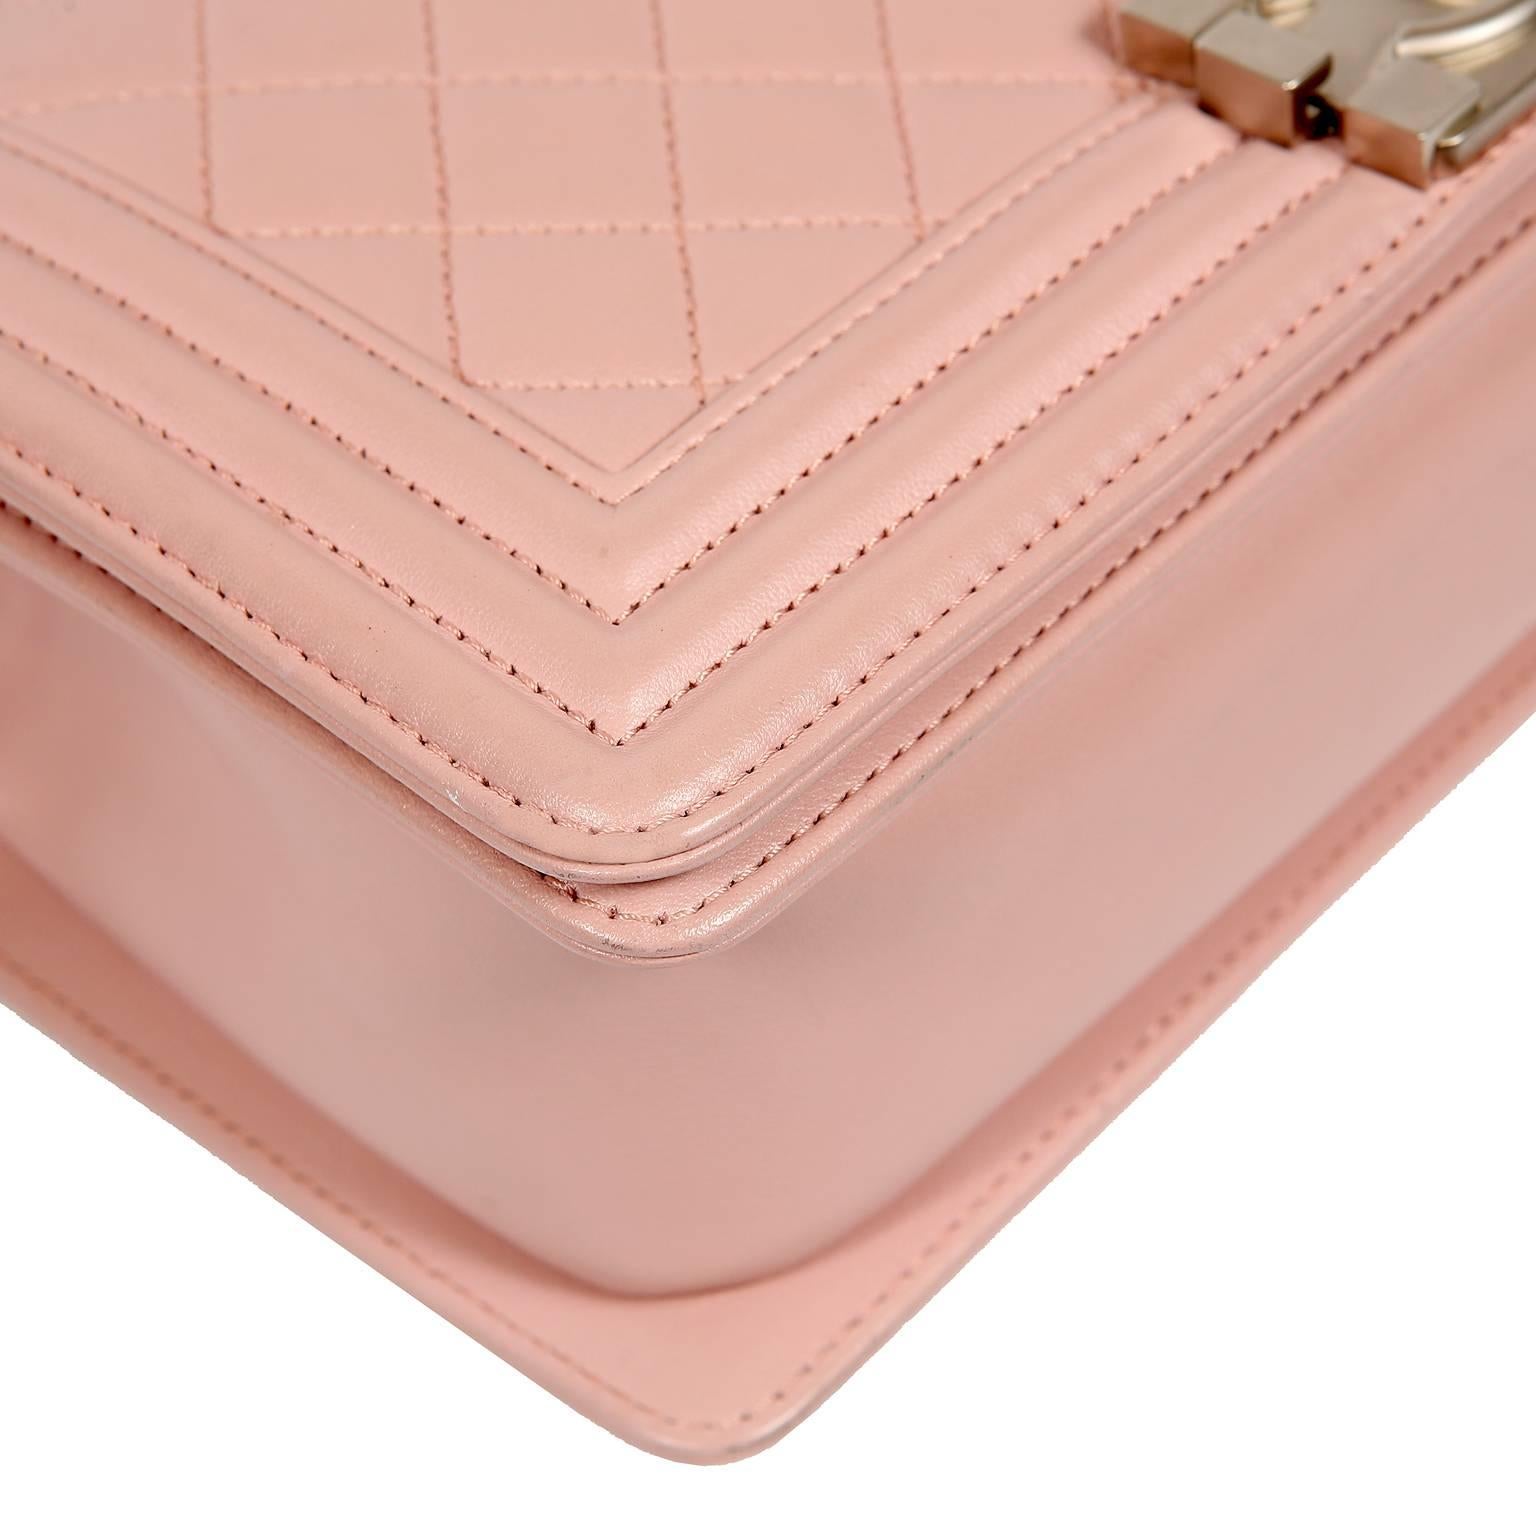 Beige Chanel Blush Pink Leather Medium Boy Bag